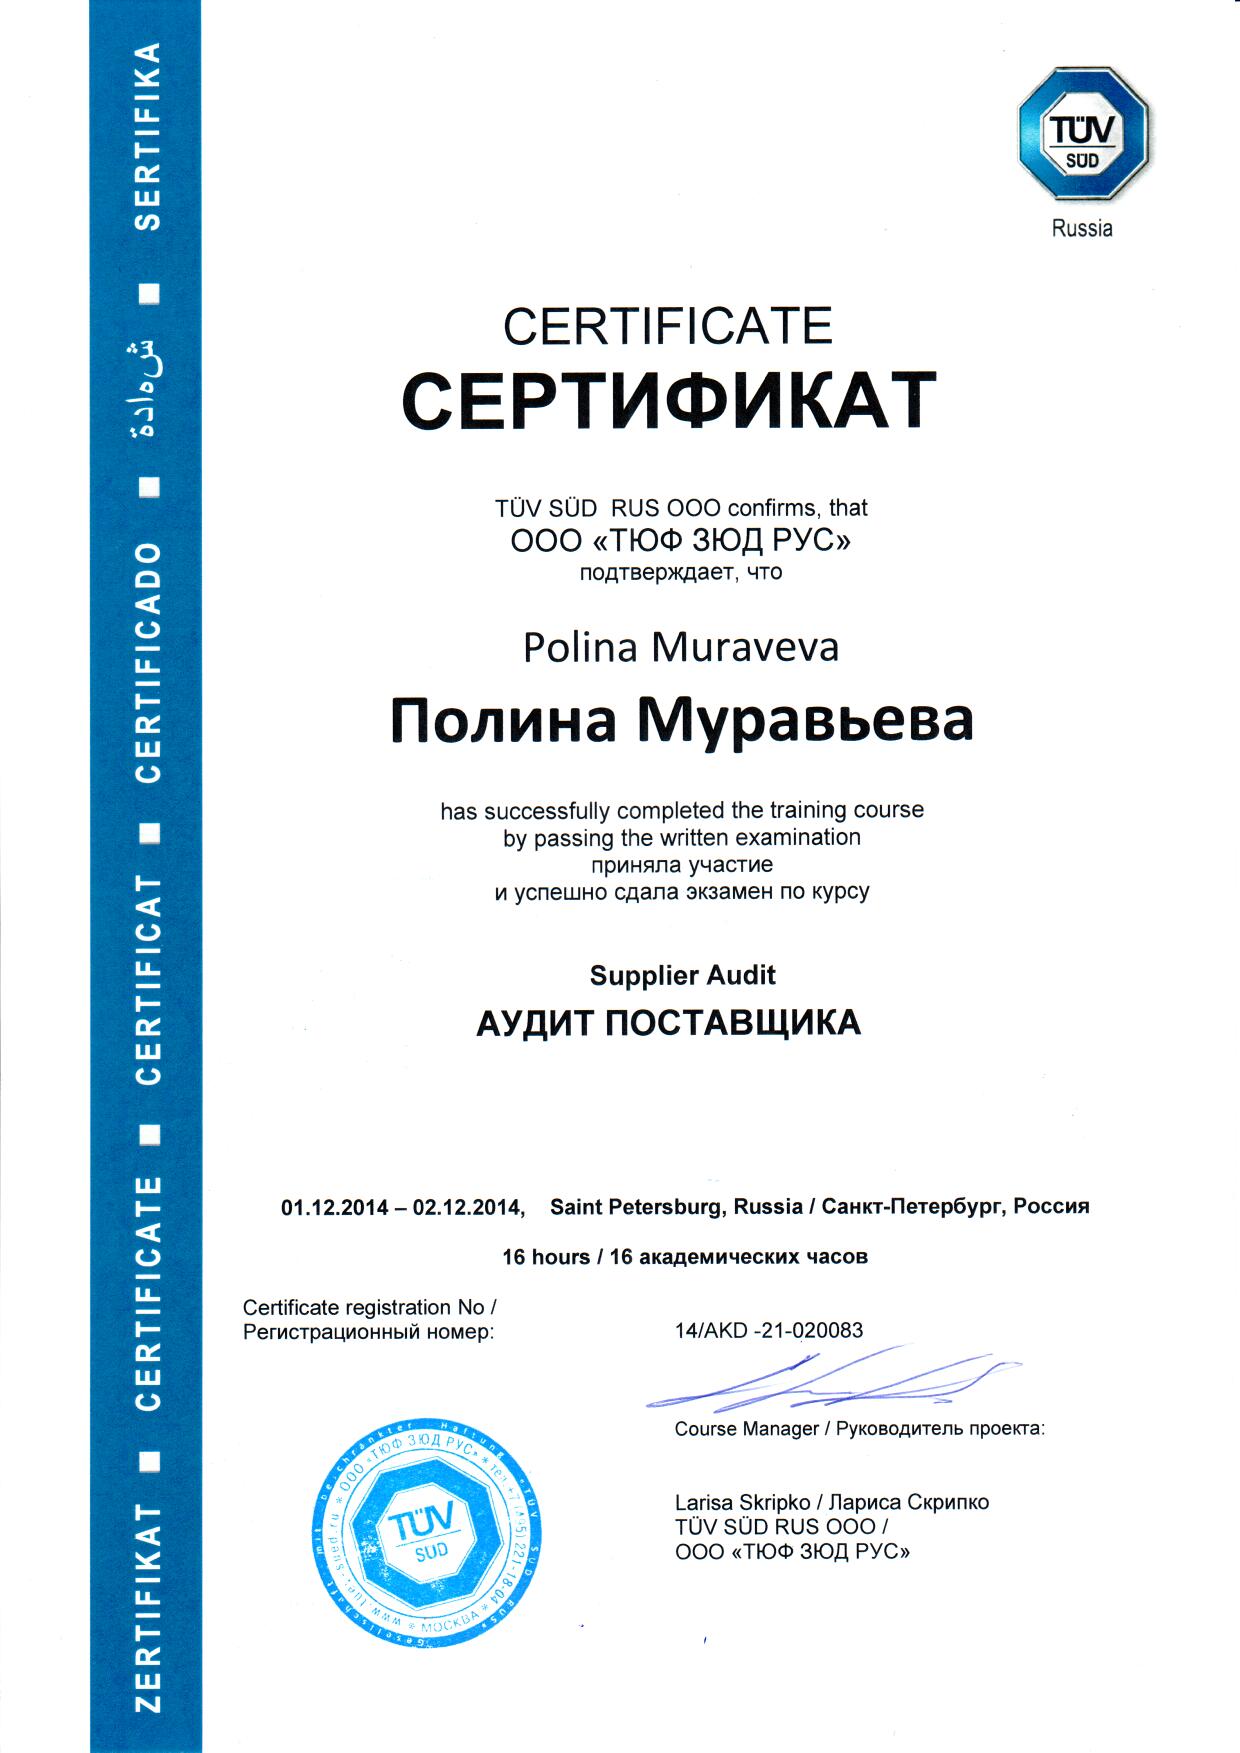 diplom-iso-muravyova-2014.jpg